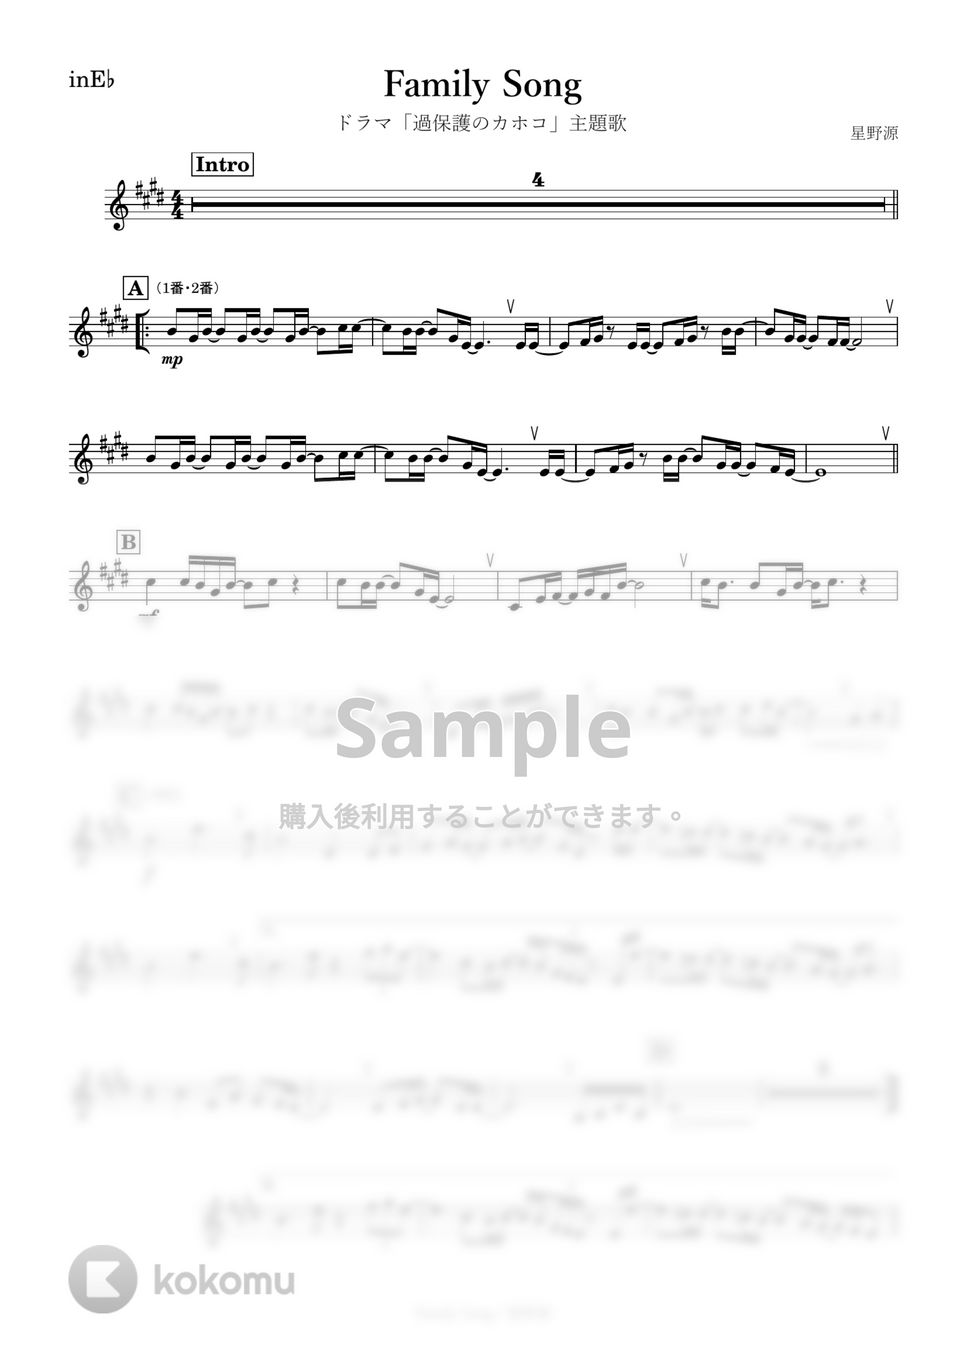 星野源 - Family Song (E♭) by kanamusic